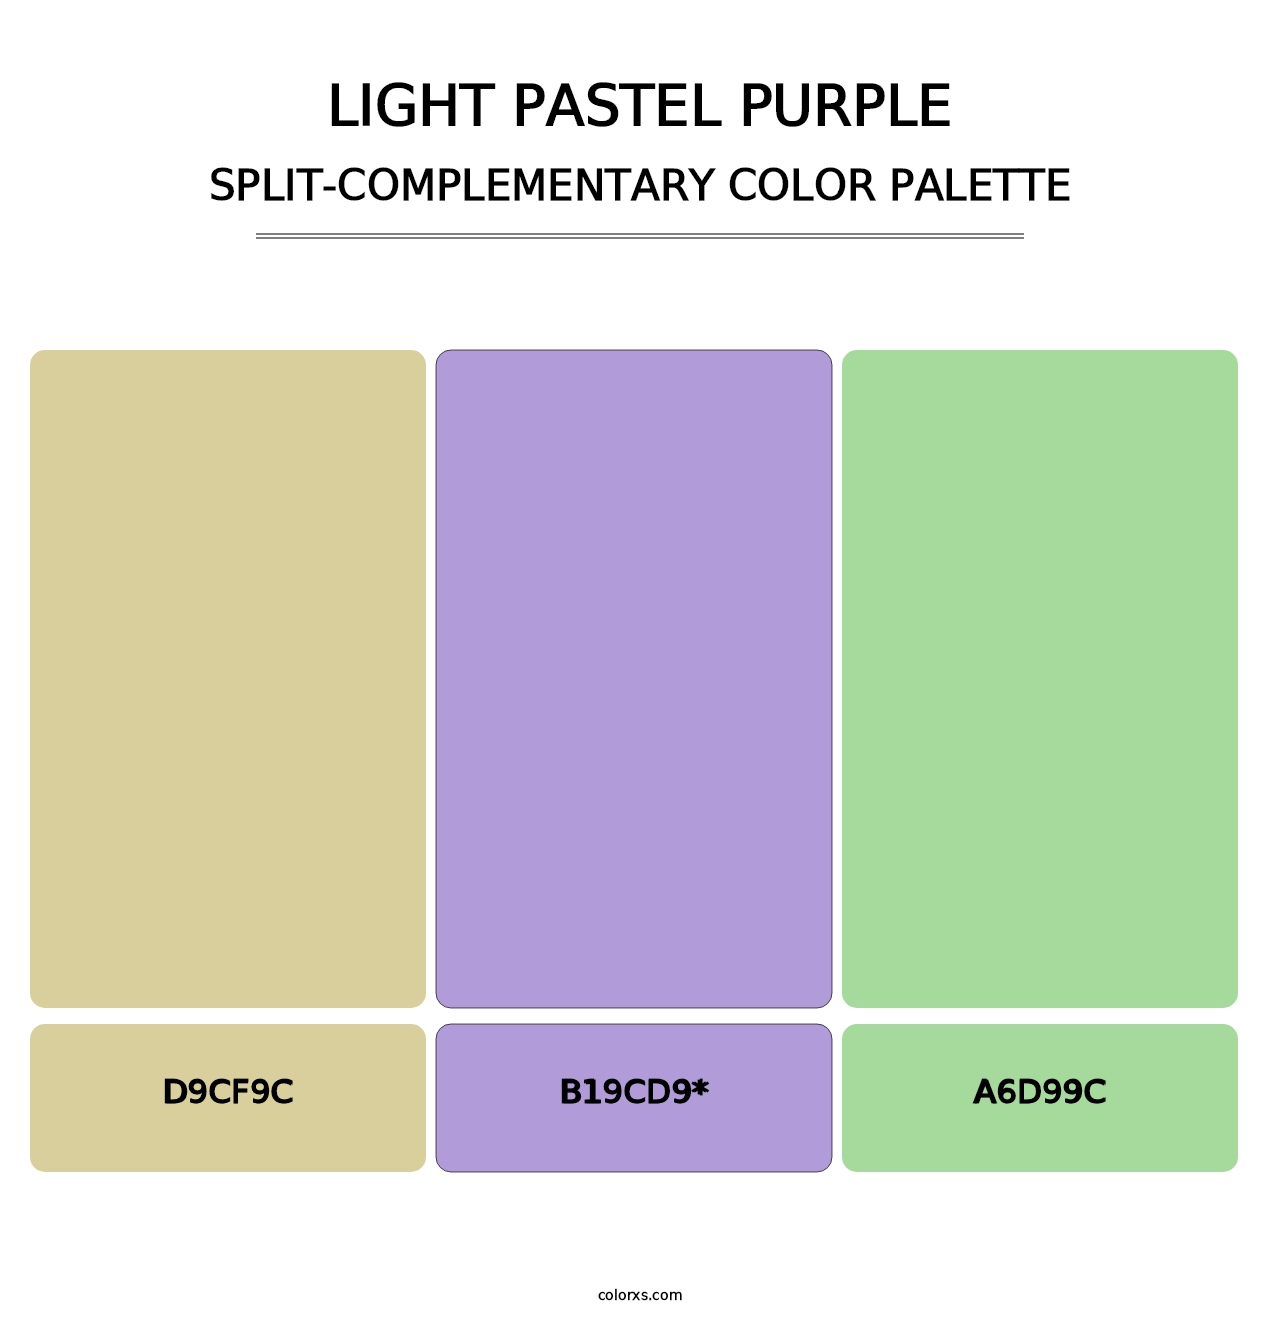 Light Pastel Purple - Split-Complementary Color Palette